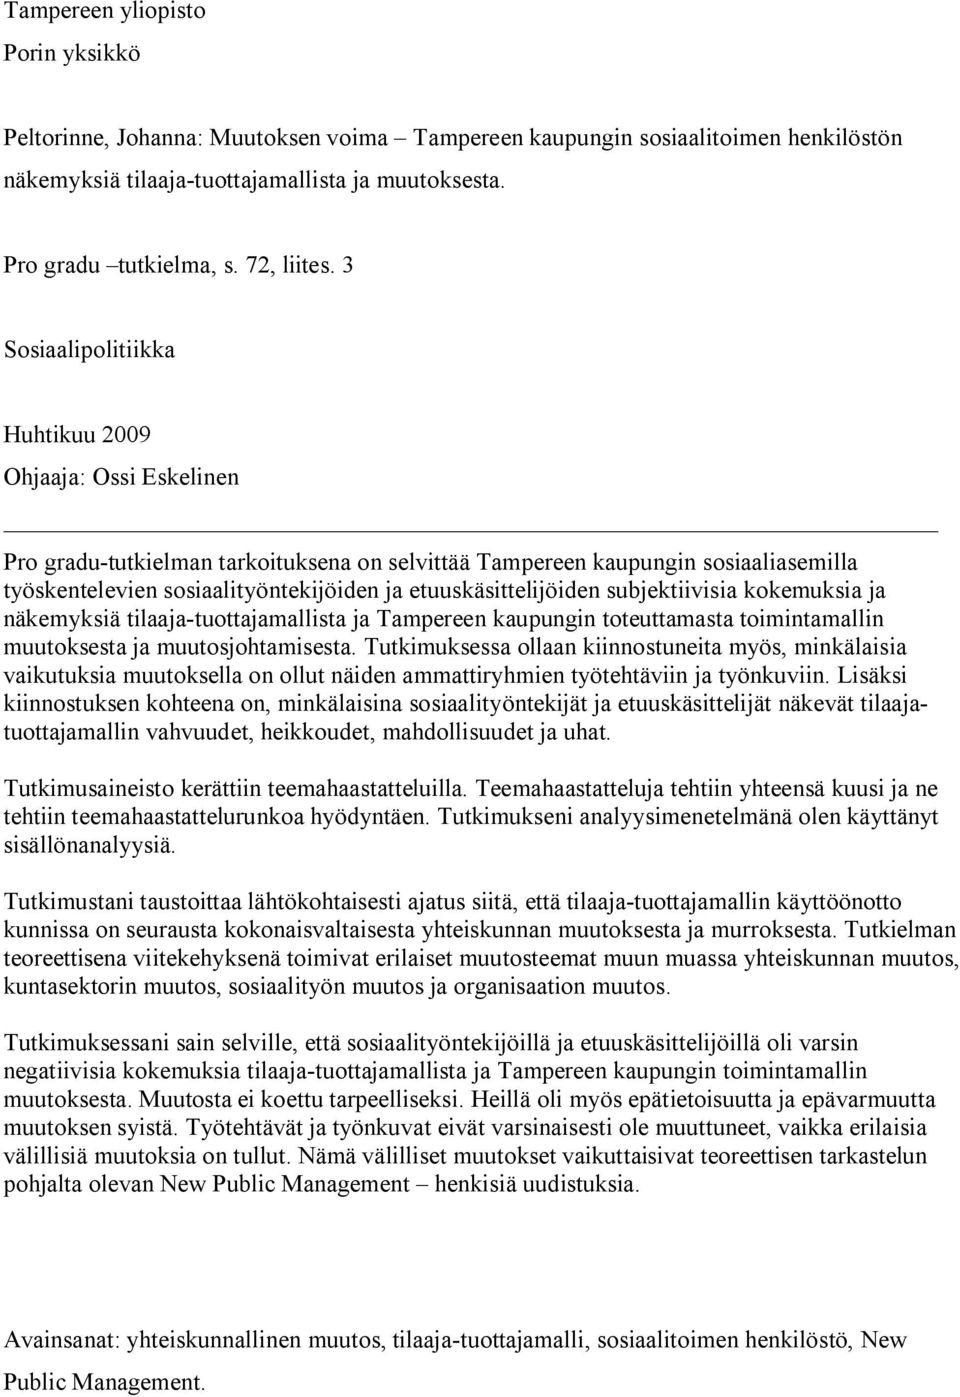 3 Sosiaalipolitiikka Huhtikuu 2009 Ohjaaja: Ossi Eskelinen Pro gradu tutkielman tarkoituksena on selvittää Tampereen kaupungin sosiaaliasemilla työskentelevien sosiaalityöntekijöiden ja